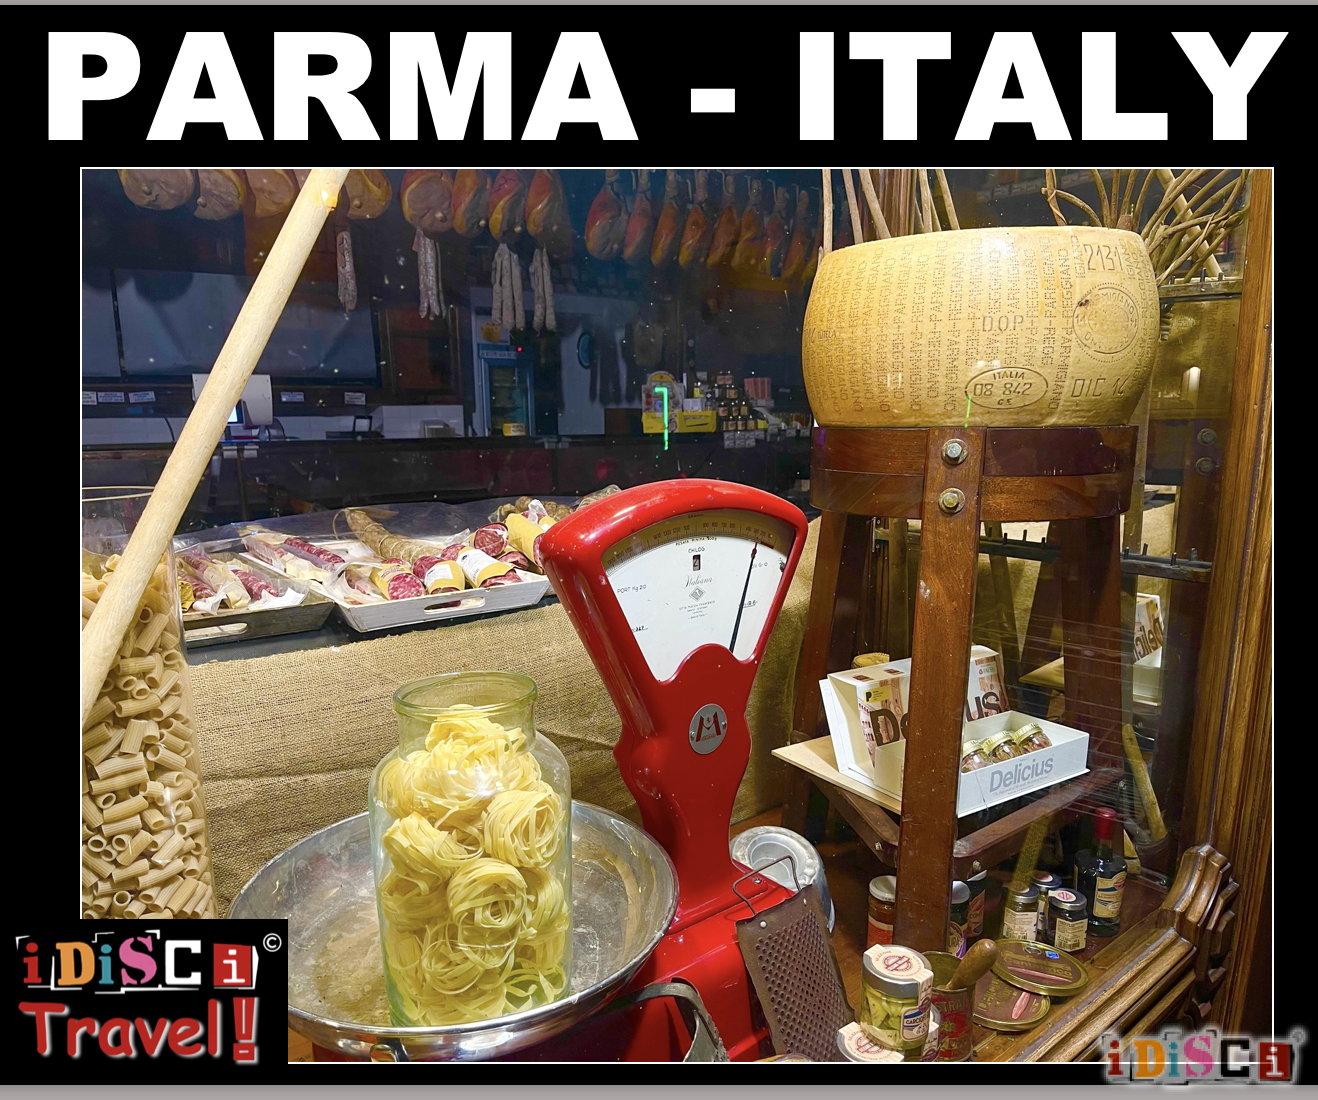 Parma, Parma Italy, Emilia-Romagna, Northern Italy, Parmesan Cheese, Prosciutto, Middle Ages, Roman Settlements, Renaissance, Renaissance Art, Renaissance Architecture, Piazza del Duomo,